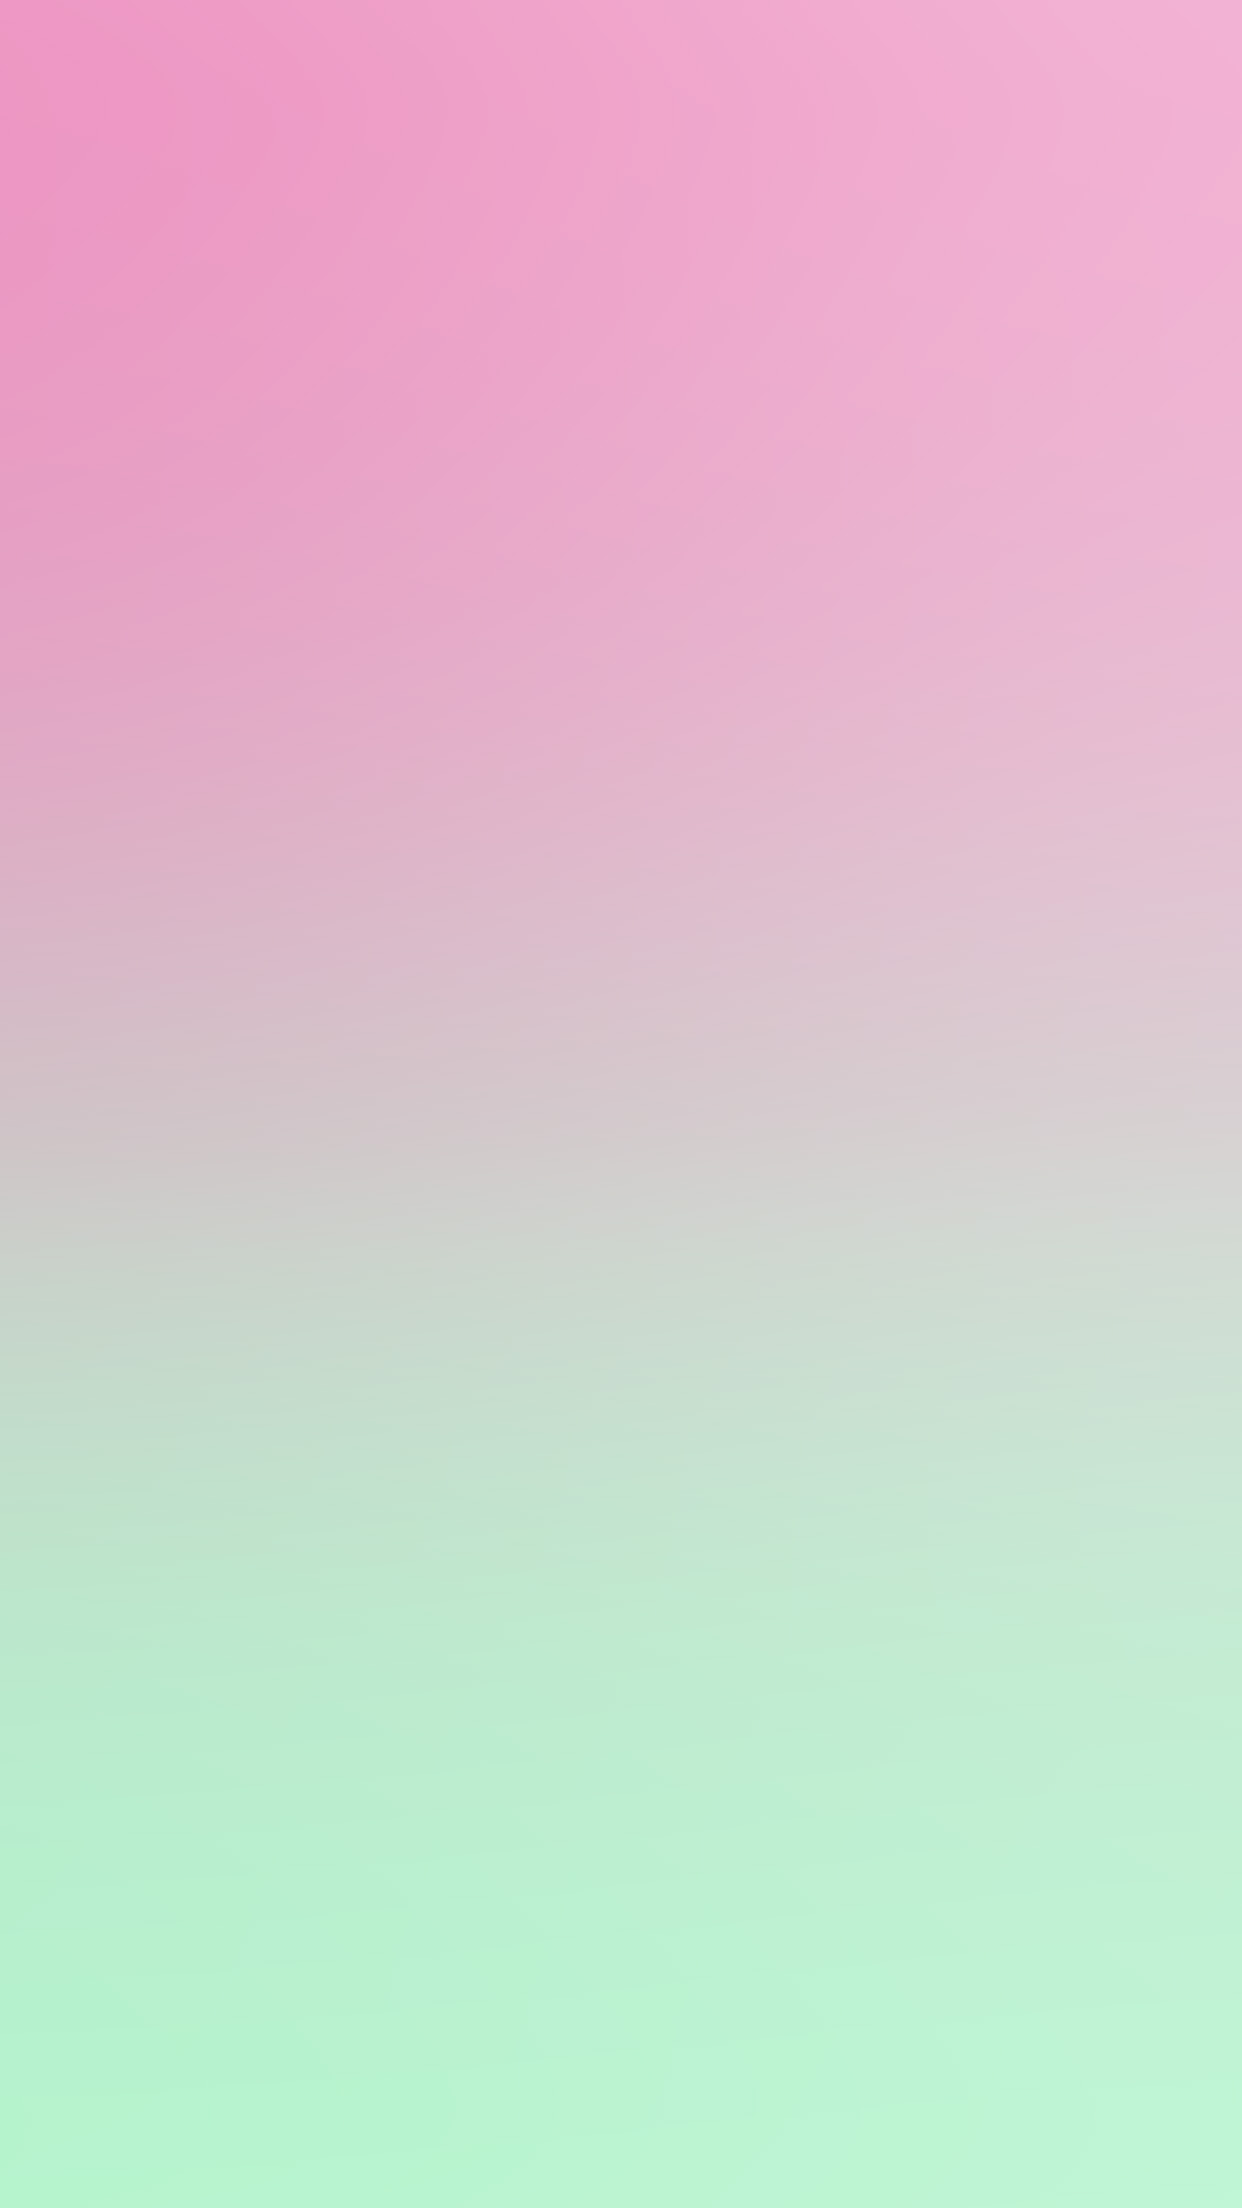 Dip Dye Pink Blue Background - 1242x2208 Wallpaper 